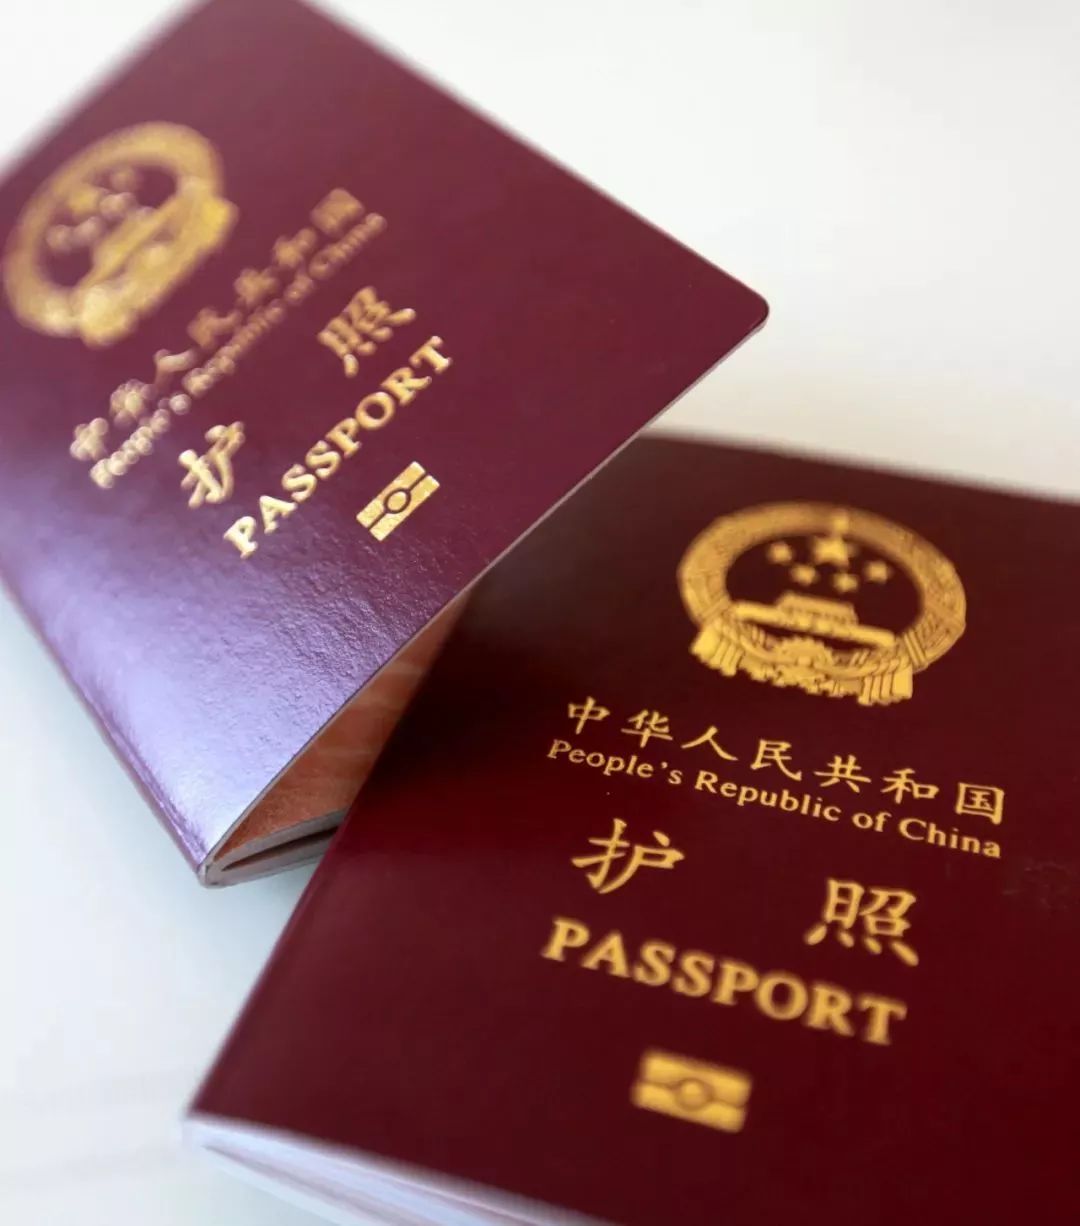 在國外留學、工作或生活超過10年，將被取消中國國籍？！ 留學 第8張